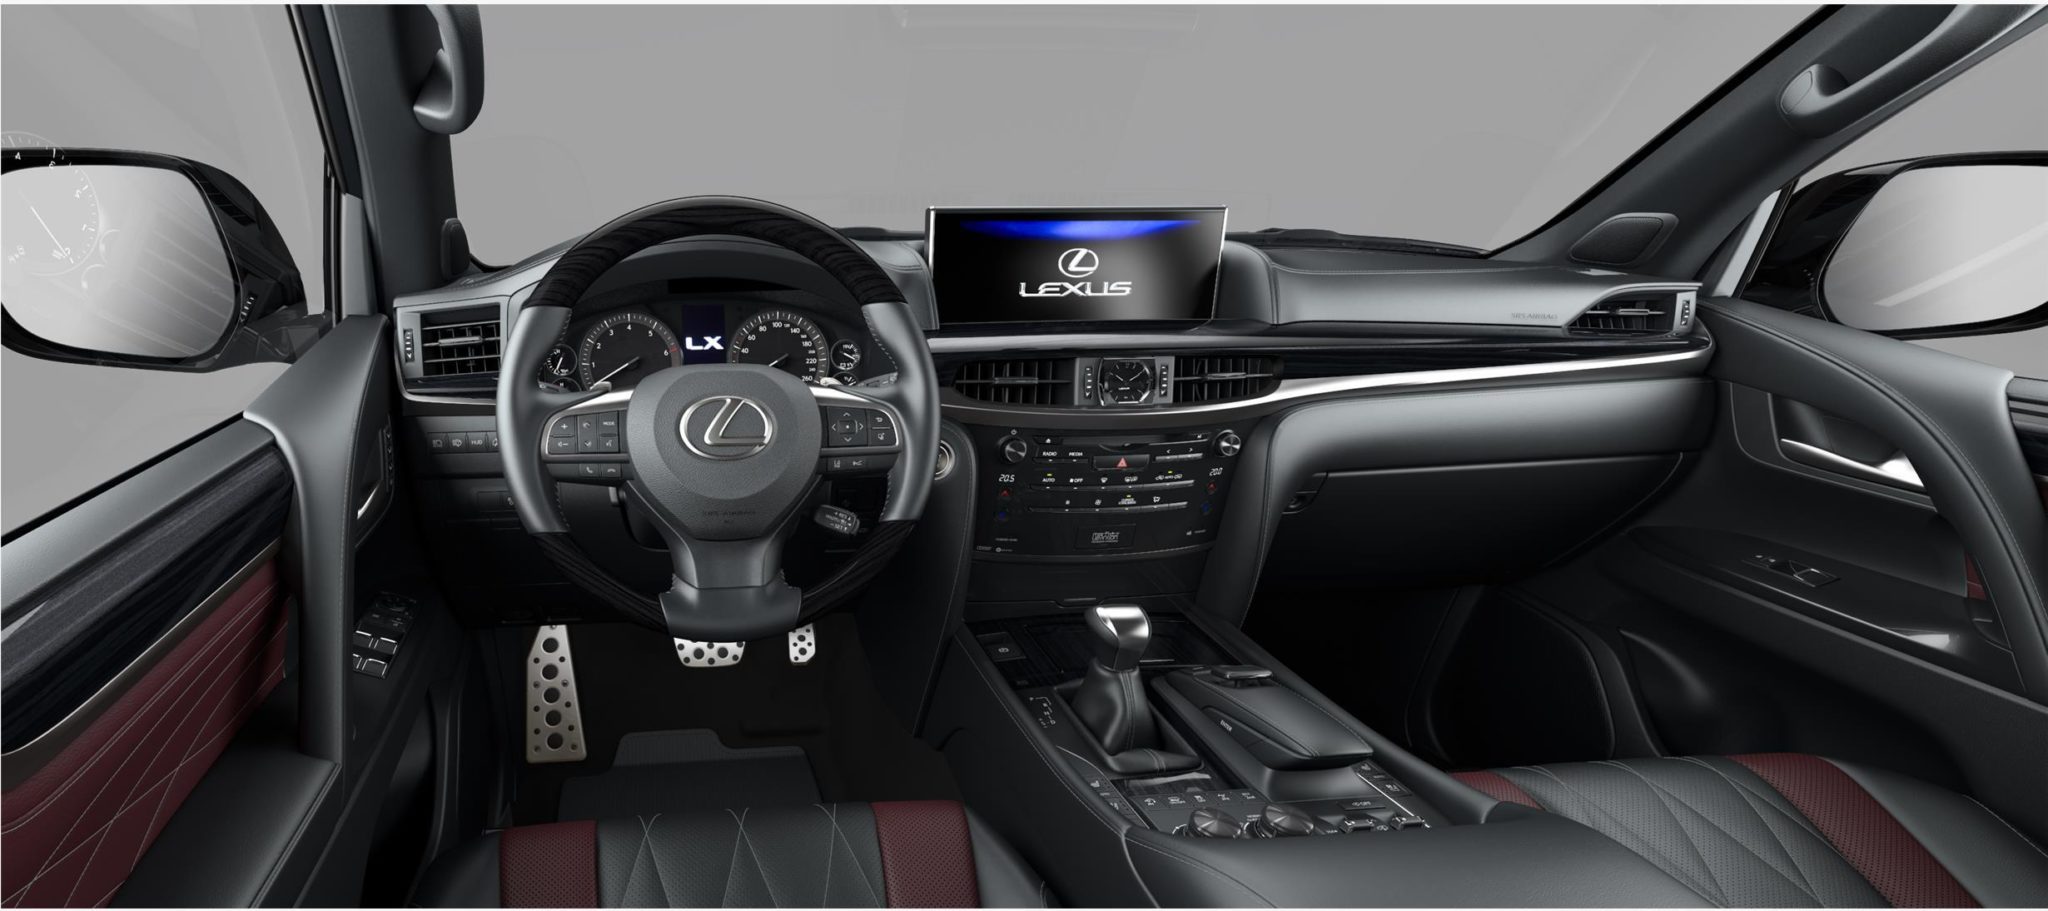 Lexus LX 570 Black Vision